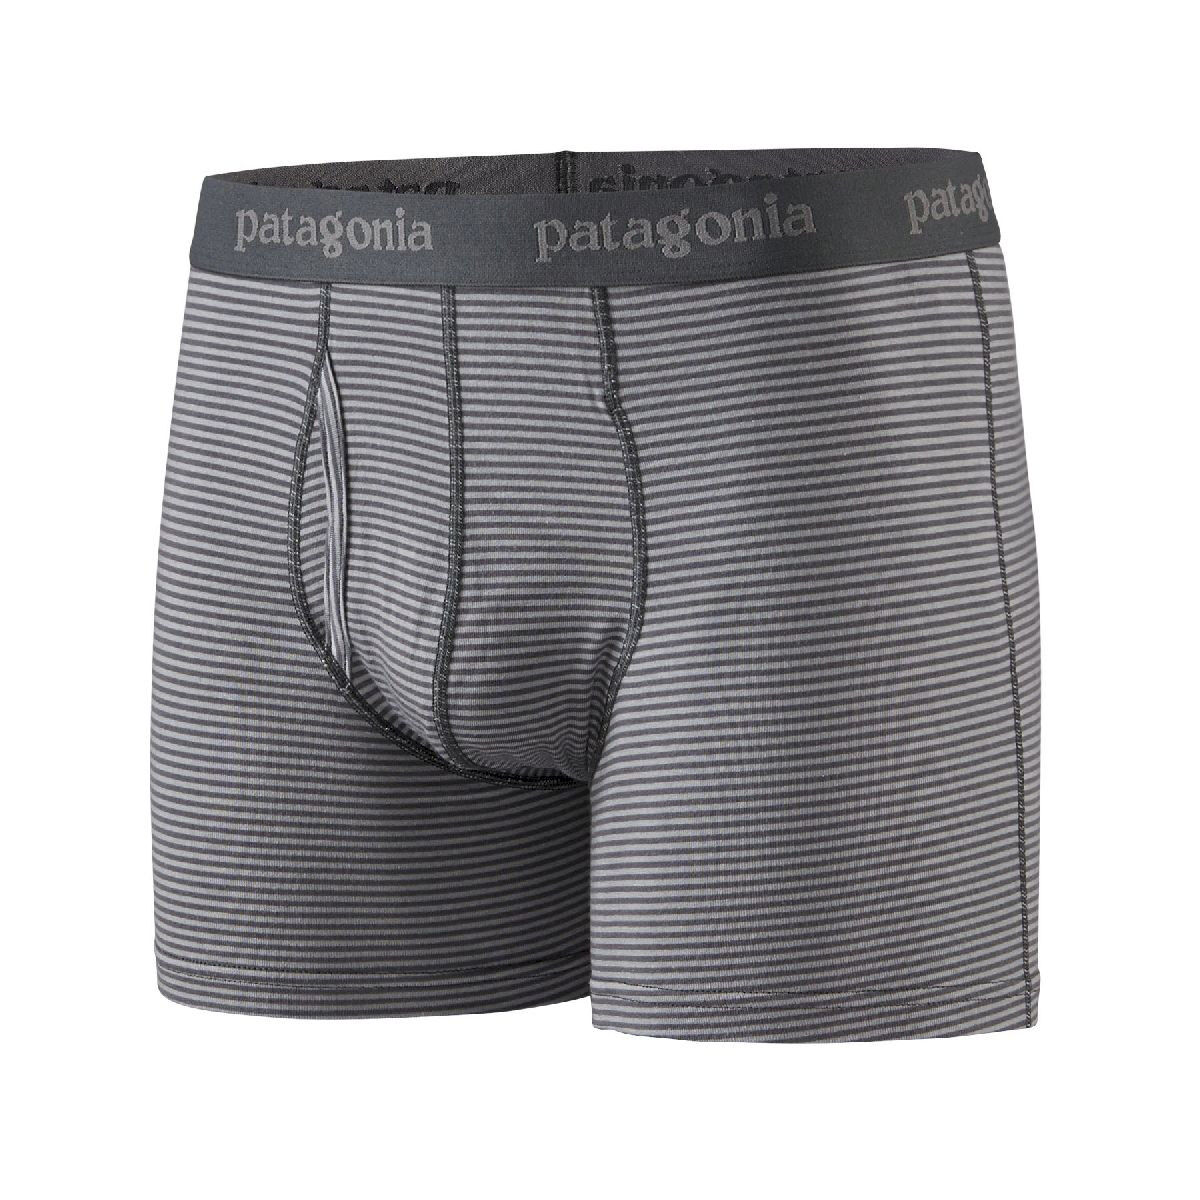 Patagonia Essential Boxer Briefs - 3 - Ondergoed